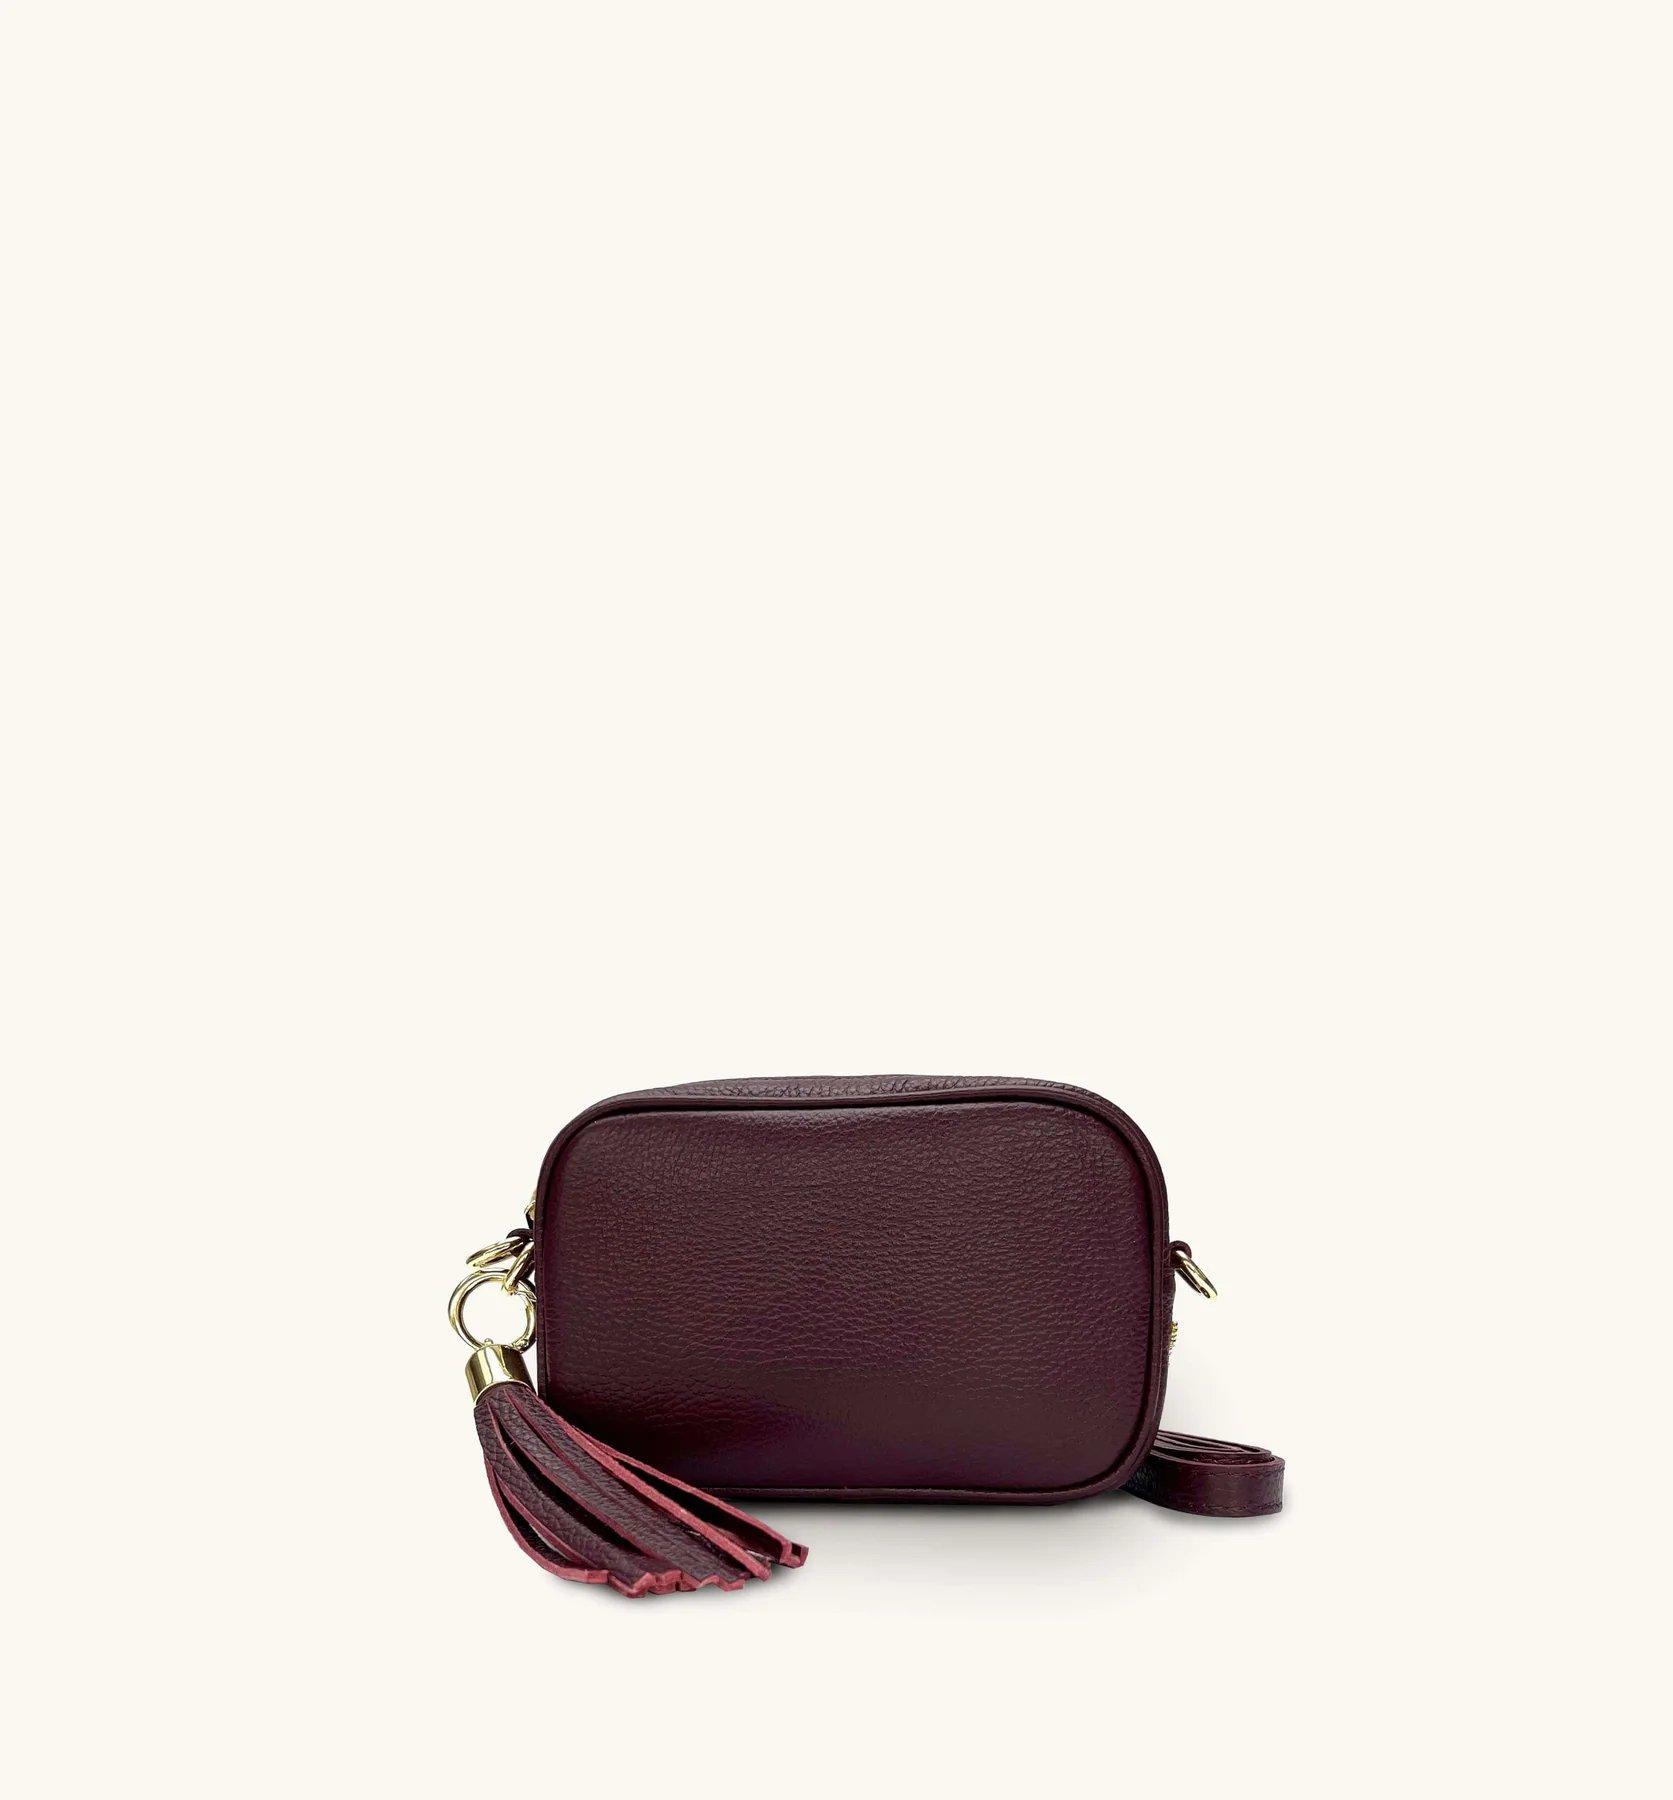 Кожаная сумка для телефона Mini с кисточками и портами Apatchy London, фиолетовый цена и фото